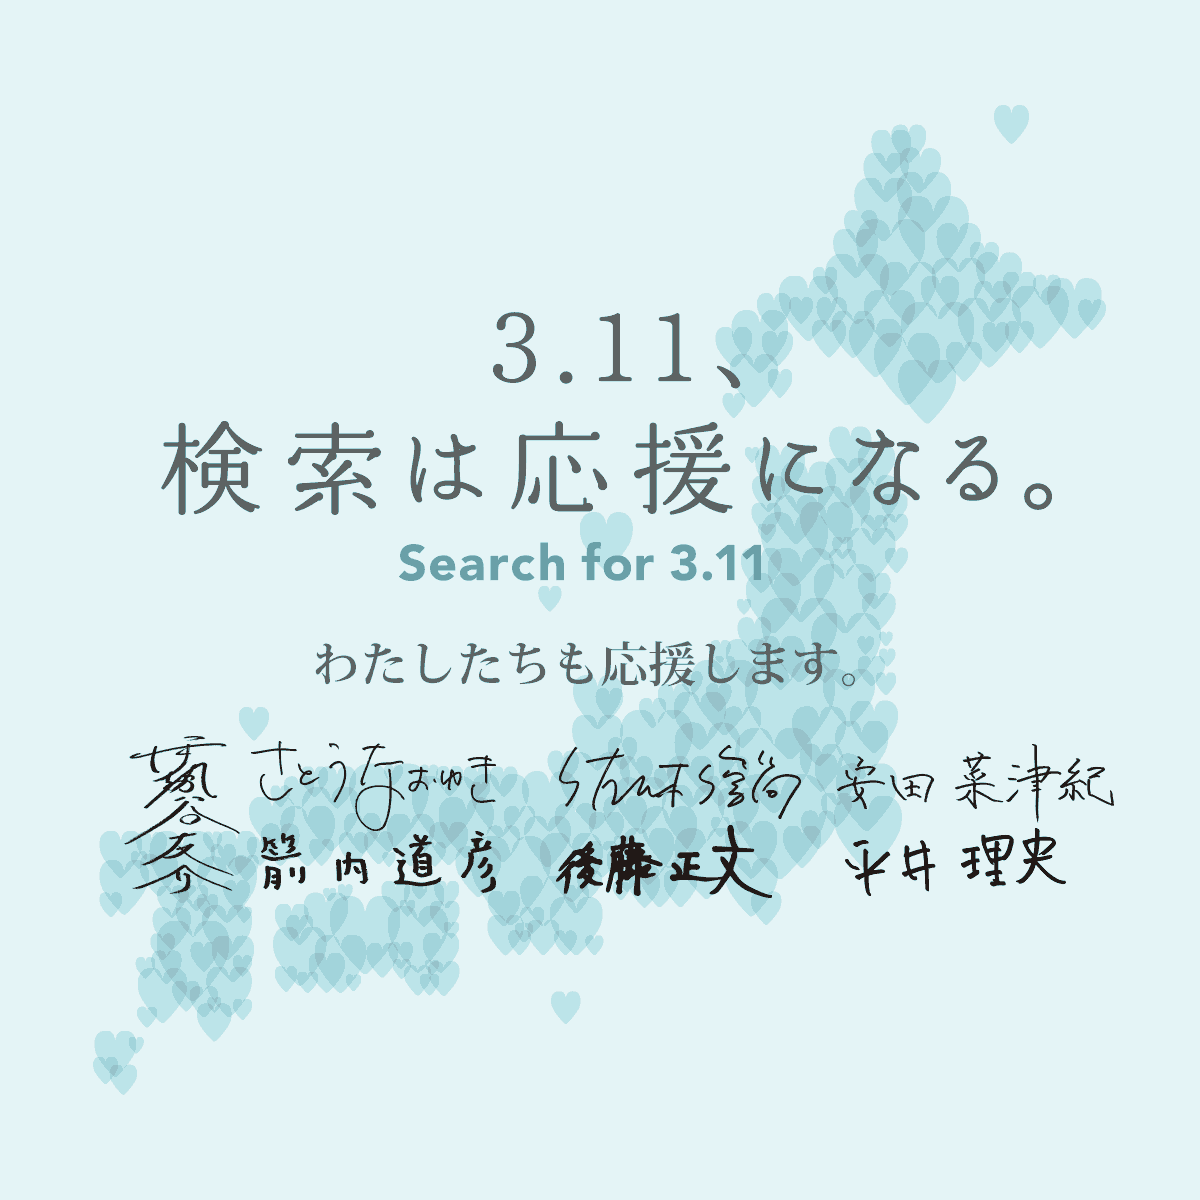 3.11、検索は応援になる。 | Search for "3.11". Be a part of Tohoku recovery.  - Yahoo!検索 シェアすることで力になる。